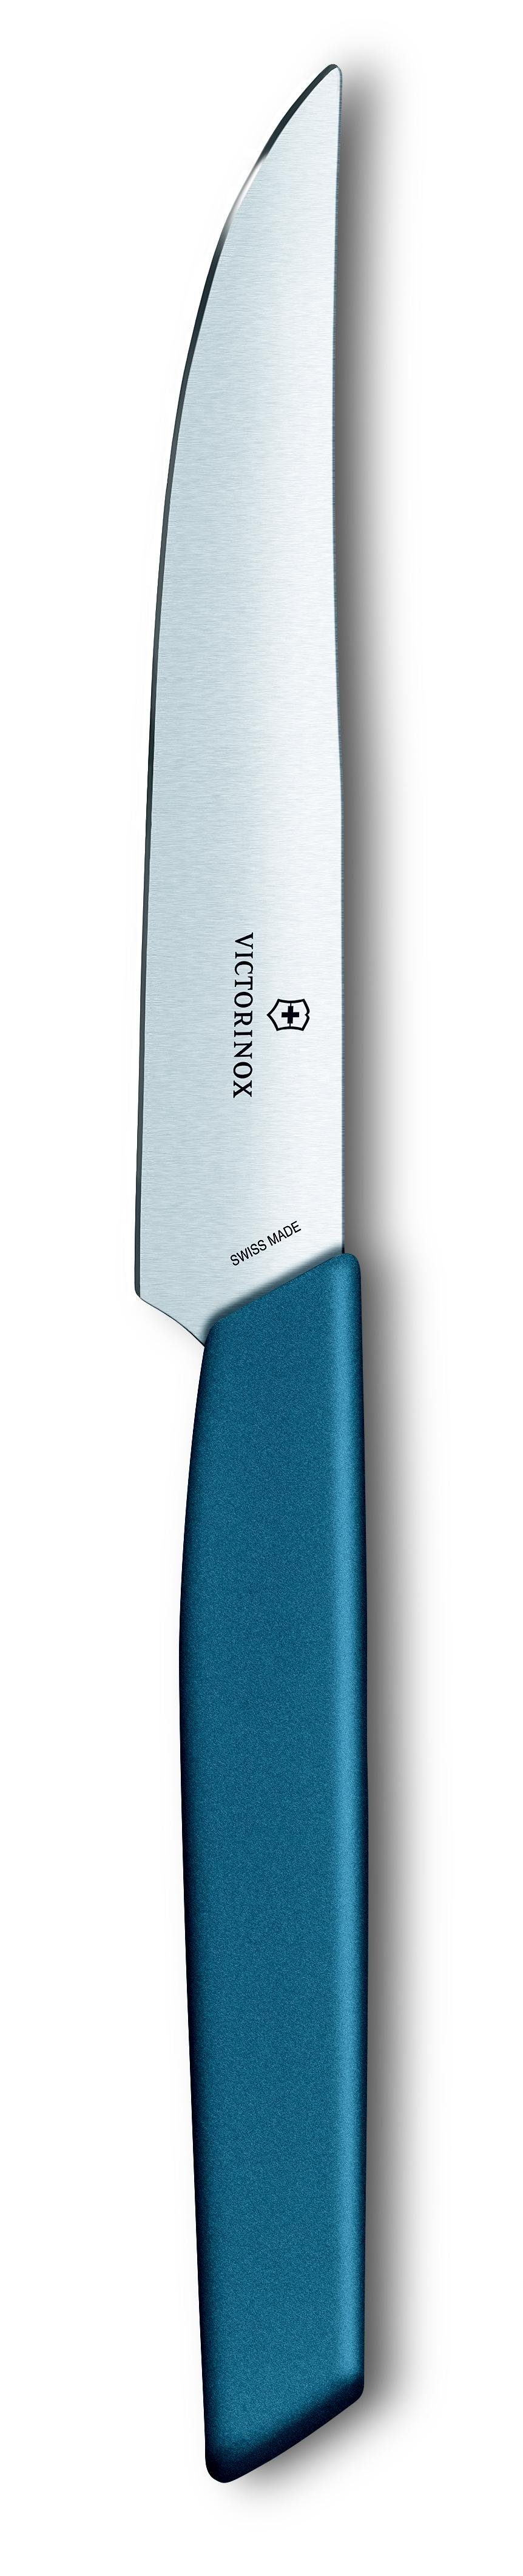 Victorinox Taschenmesser Steak knife, 12 cm, cornflower